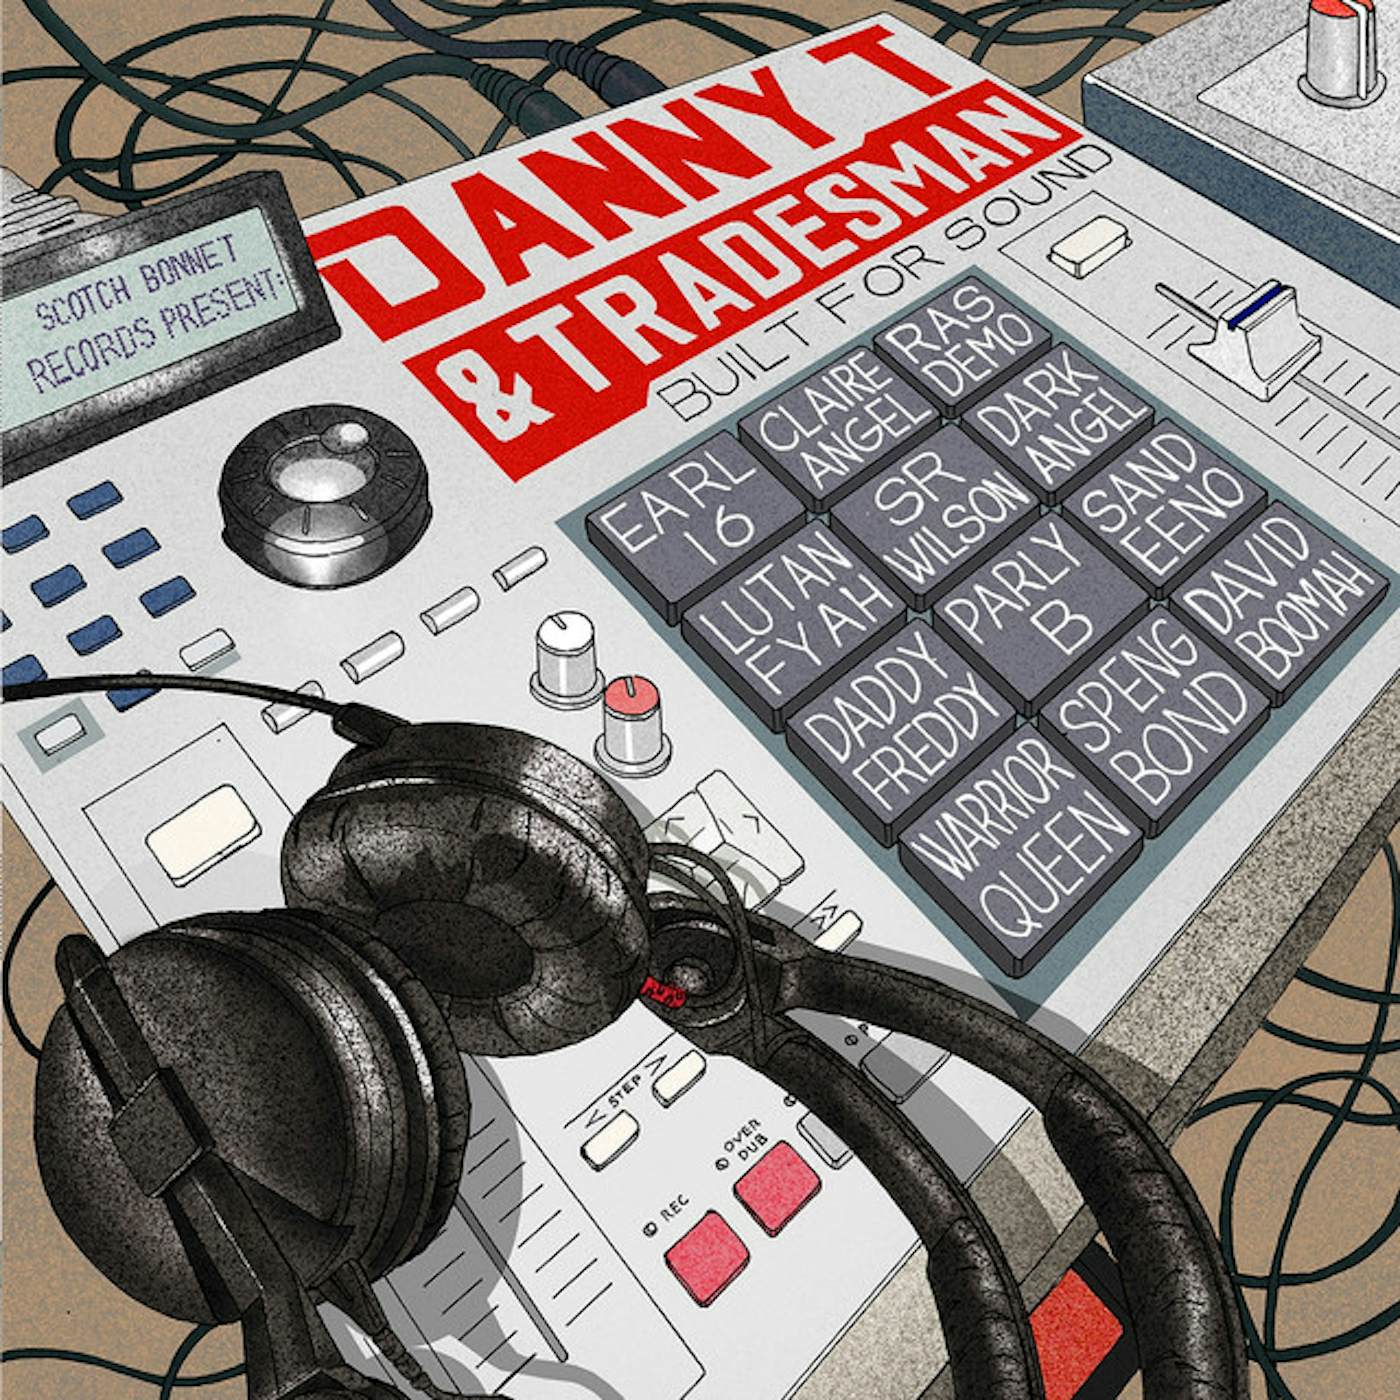 Danny T & Tradesman Built for Sound Vinyl Record